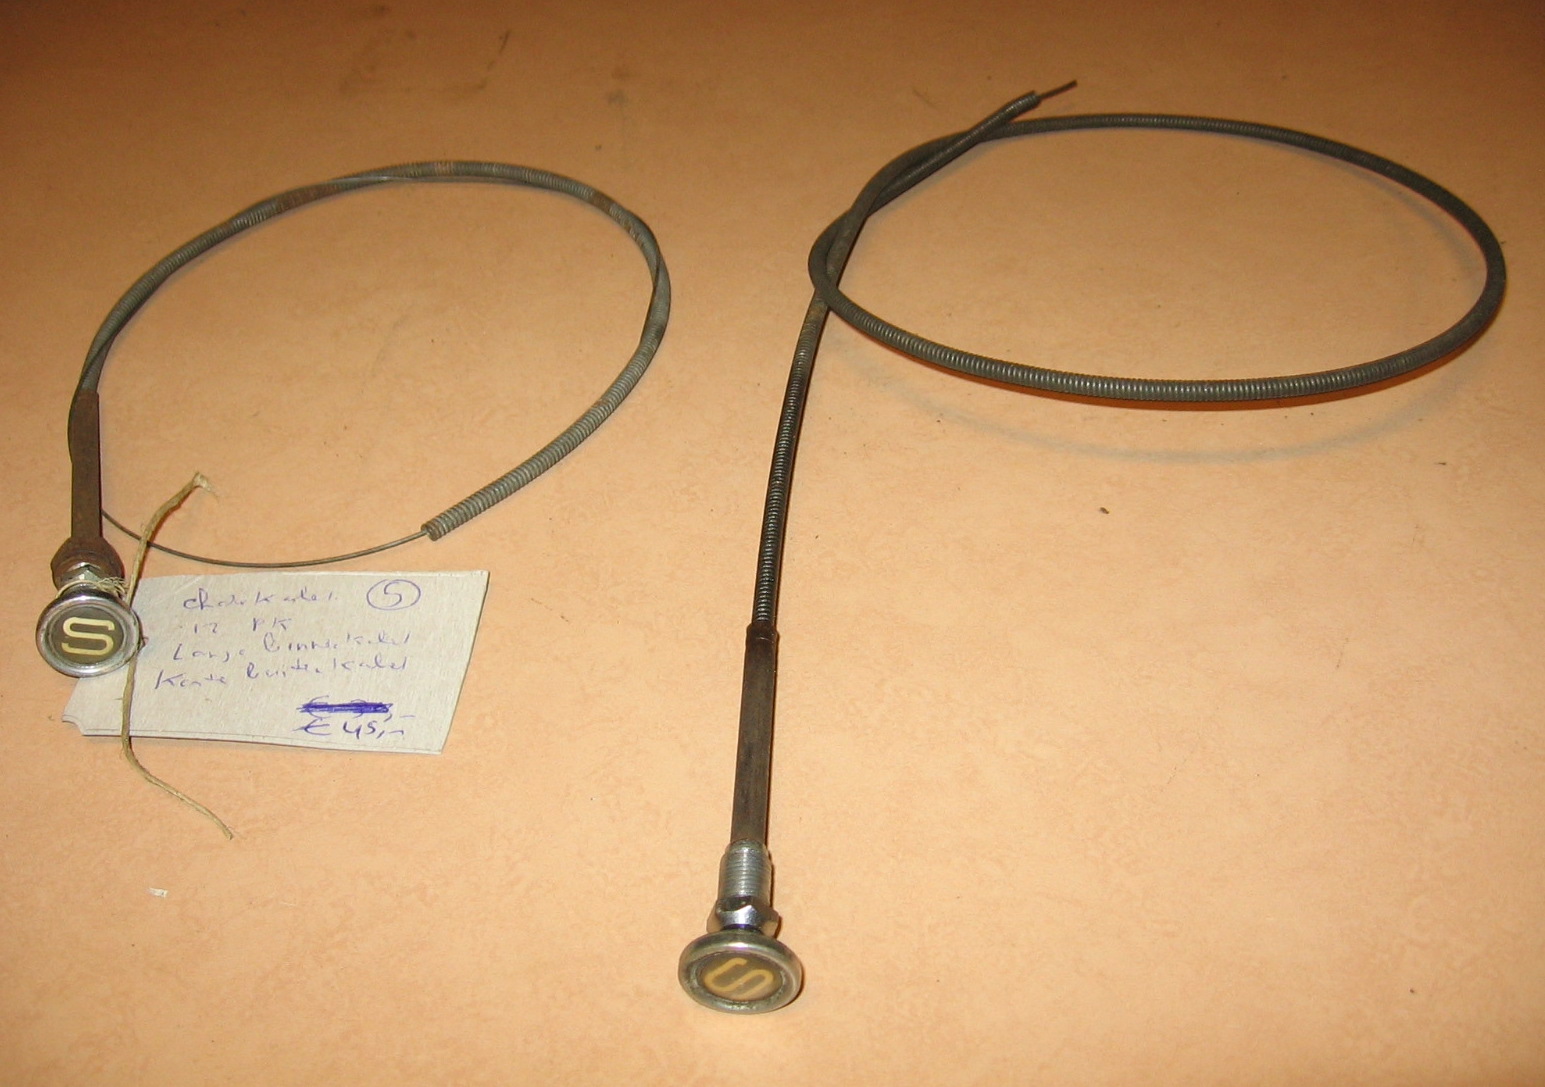 OD0647 S-kabel/choke-kabel, voor 2cv jaren '50 en '60. Origineel. Zowel het kort als langere type.